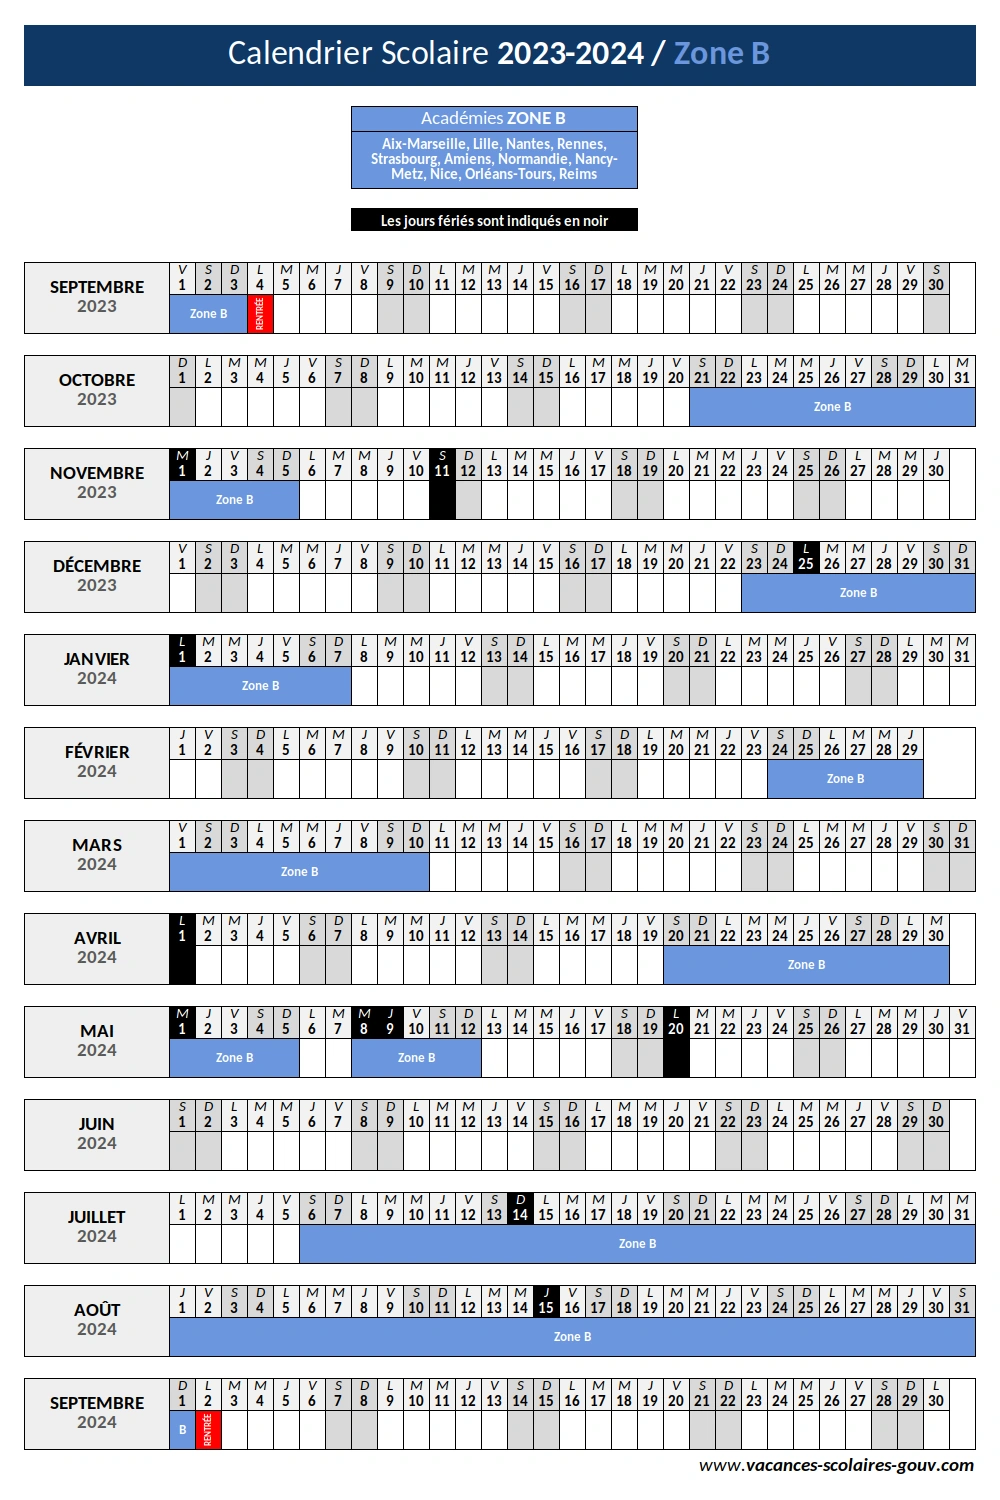 Calendrier Scolaire 2023-2024 ≡ Dates Officielles des vacances scolaires